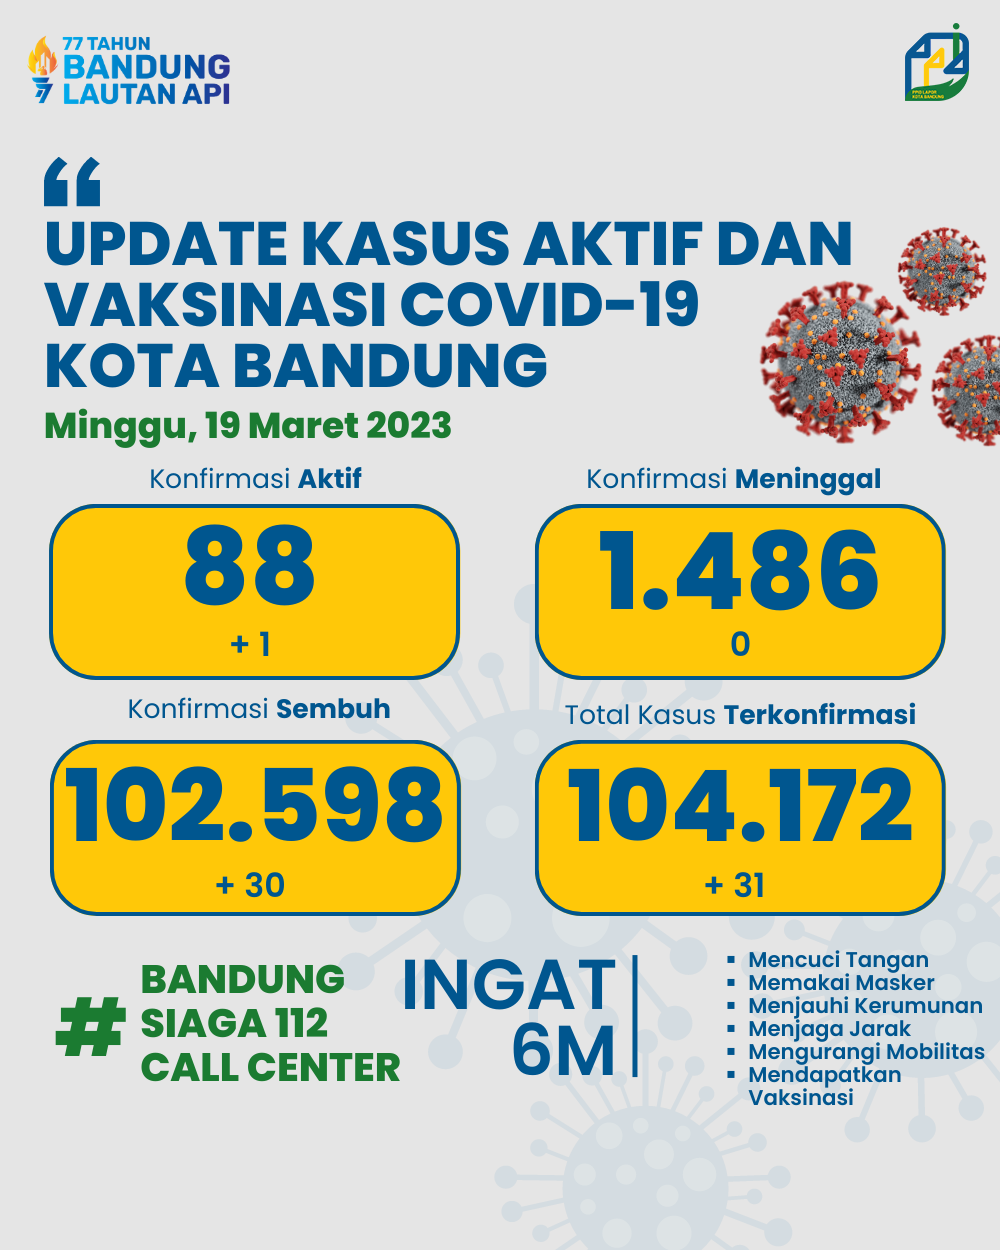 UPDATE STATISTIK COVID-19 DI KOTA BANDUNG PER TANGGAL 19 MARET 2023